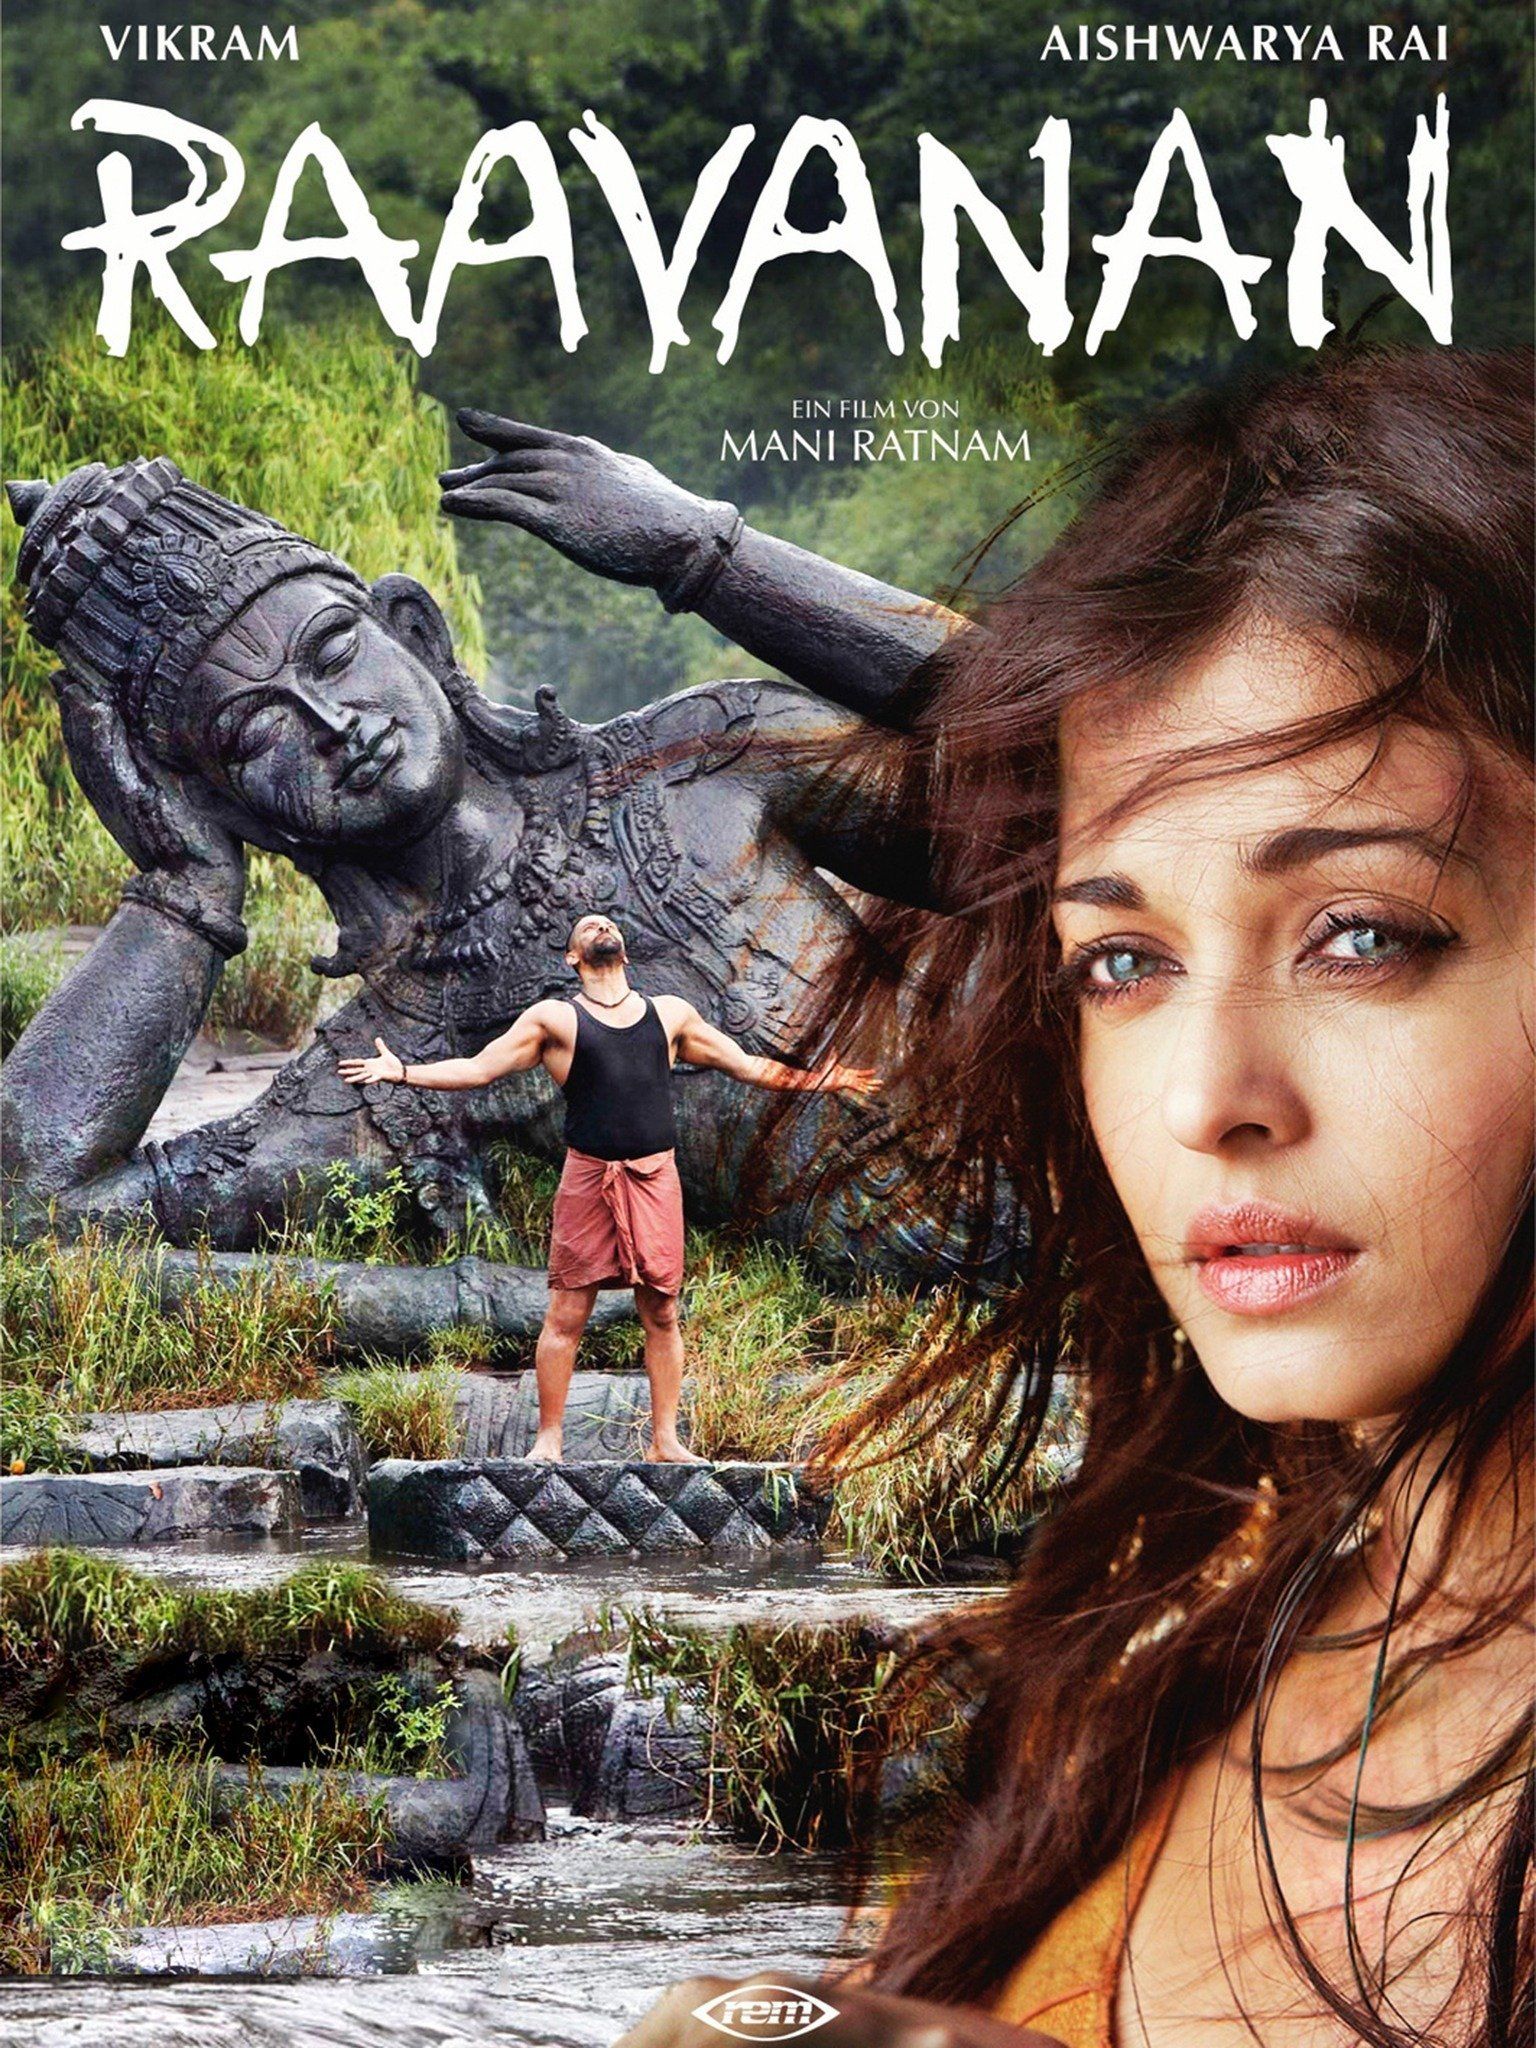 ravanan songs free download